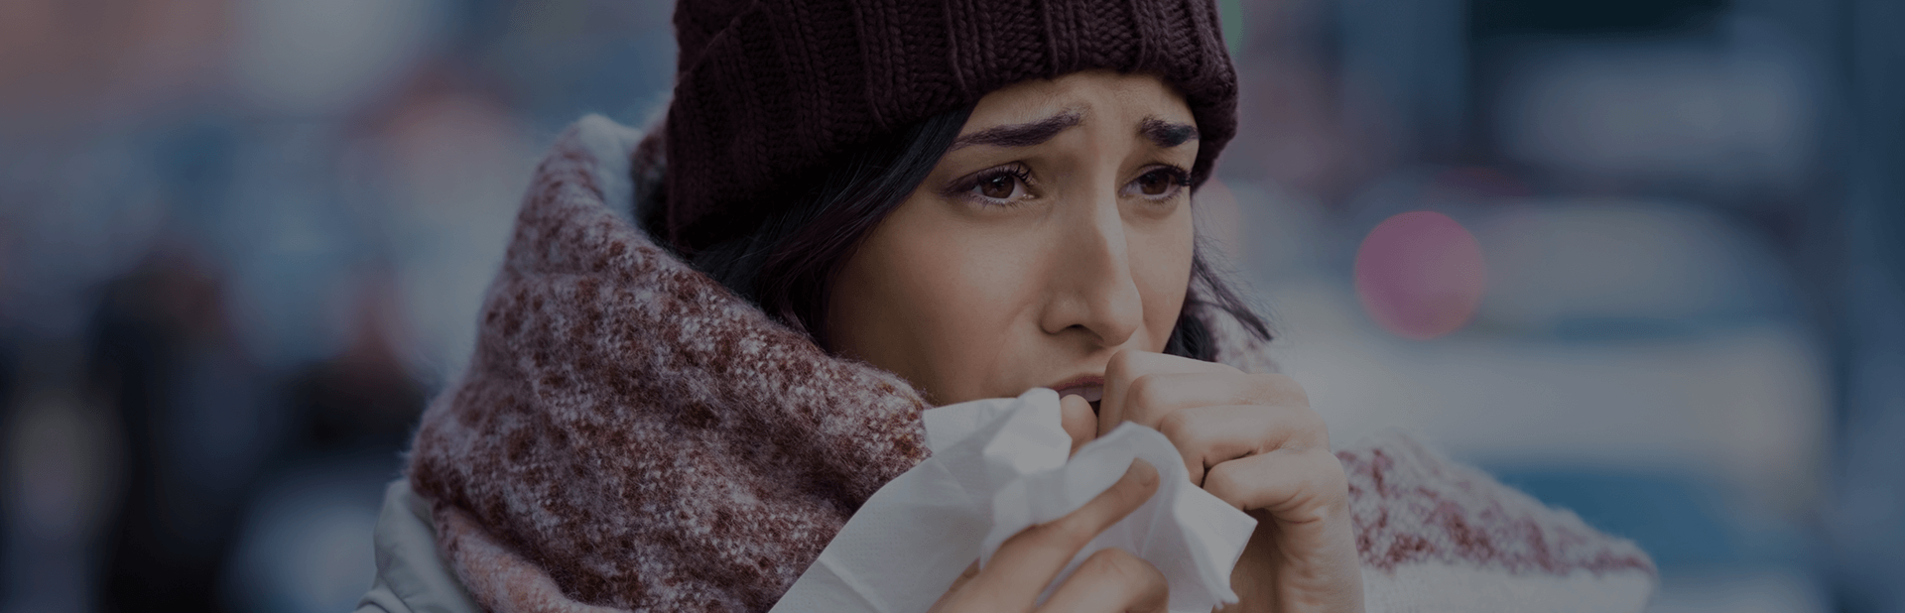 Sezon przeziębieniowy – jak radzić sobie z kaszlem i gęstą wydzieliną z dróg oddechowych?